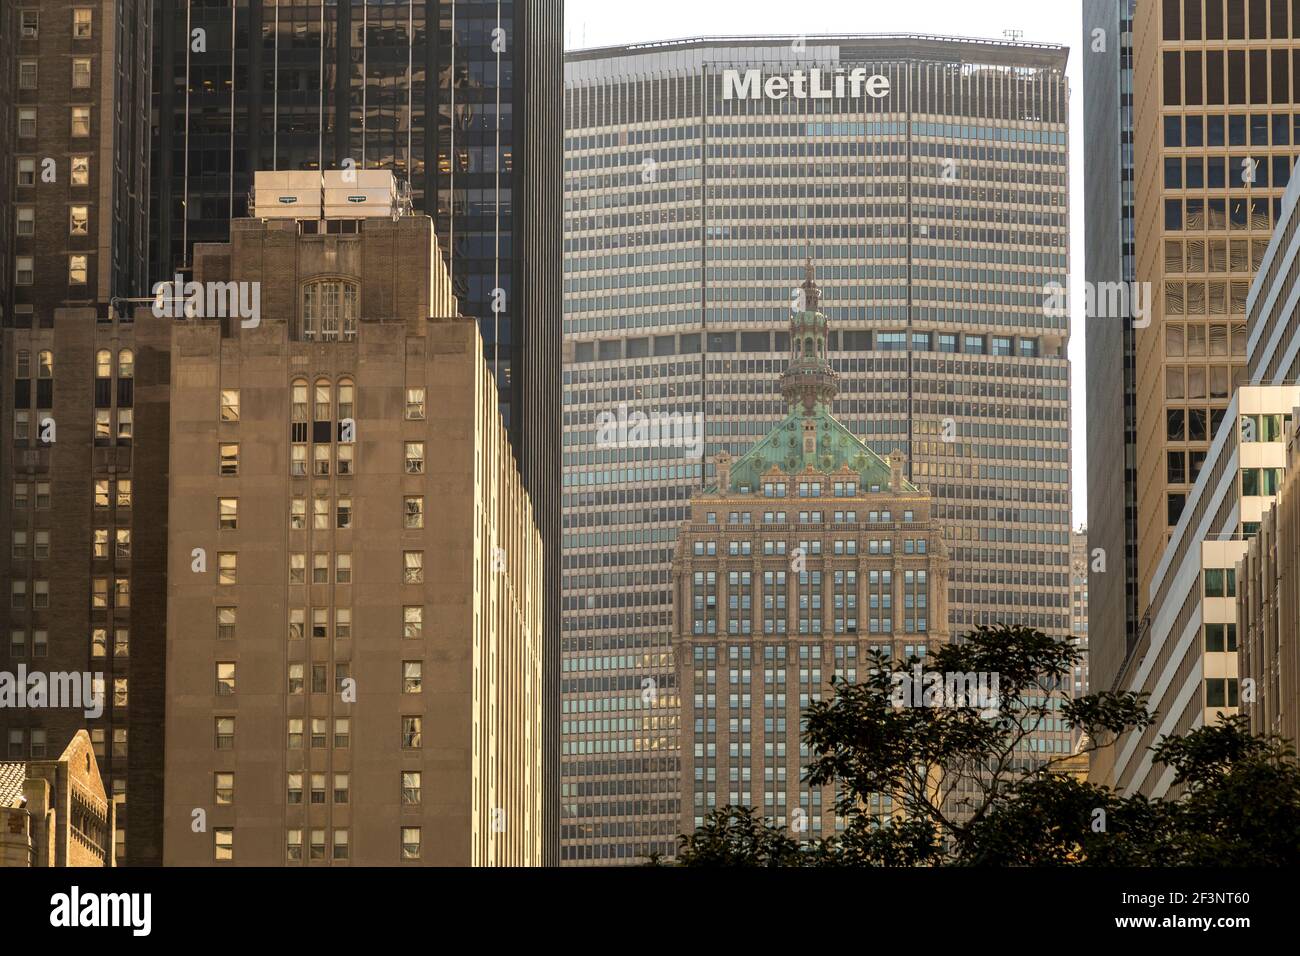 Le bâtiment MetLife, par Pietro Belluschi et Walter Gropius, qui domine le bâtiment Helmsley d'avant-guerre, sur Park Avenue à Manhattan. Banque D'Images